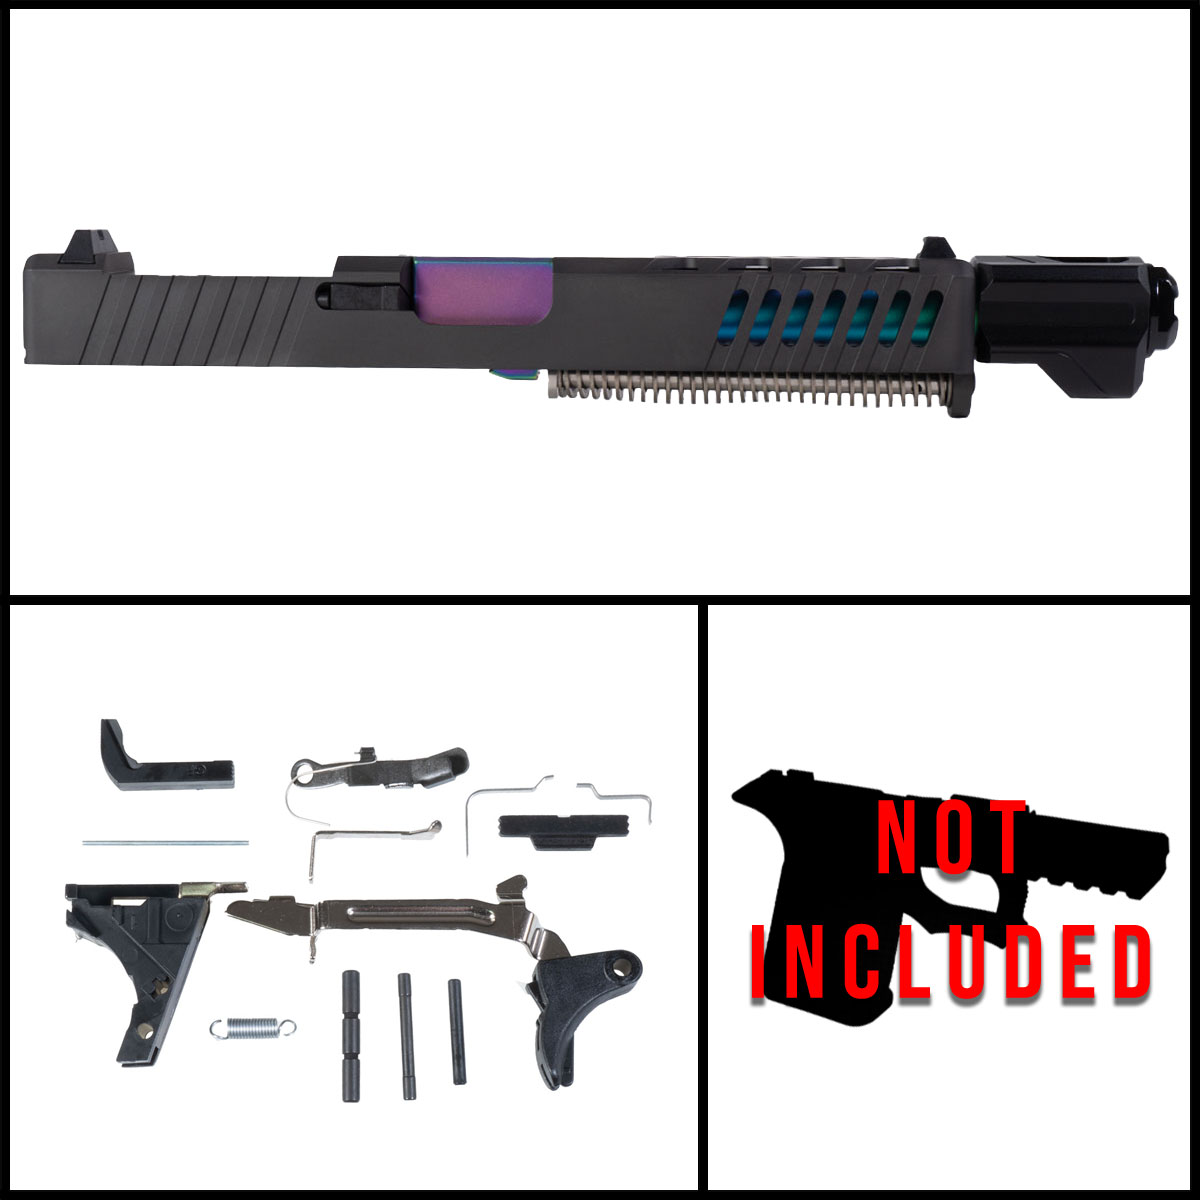 DTT 'Firework Fanfare' 9mm Full Pistol Build Kit (Everything Minus Frame) - Glock 17 Gen 1-3 Compatible